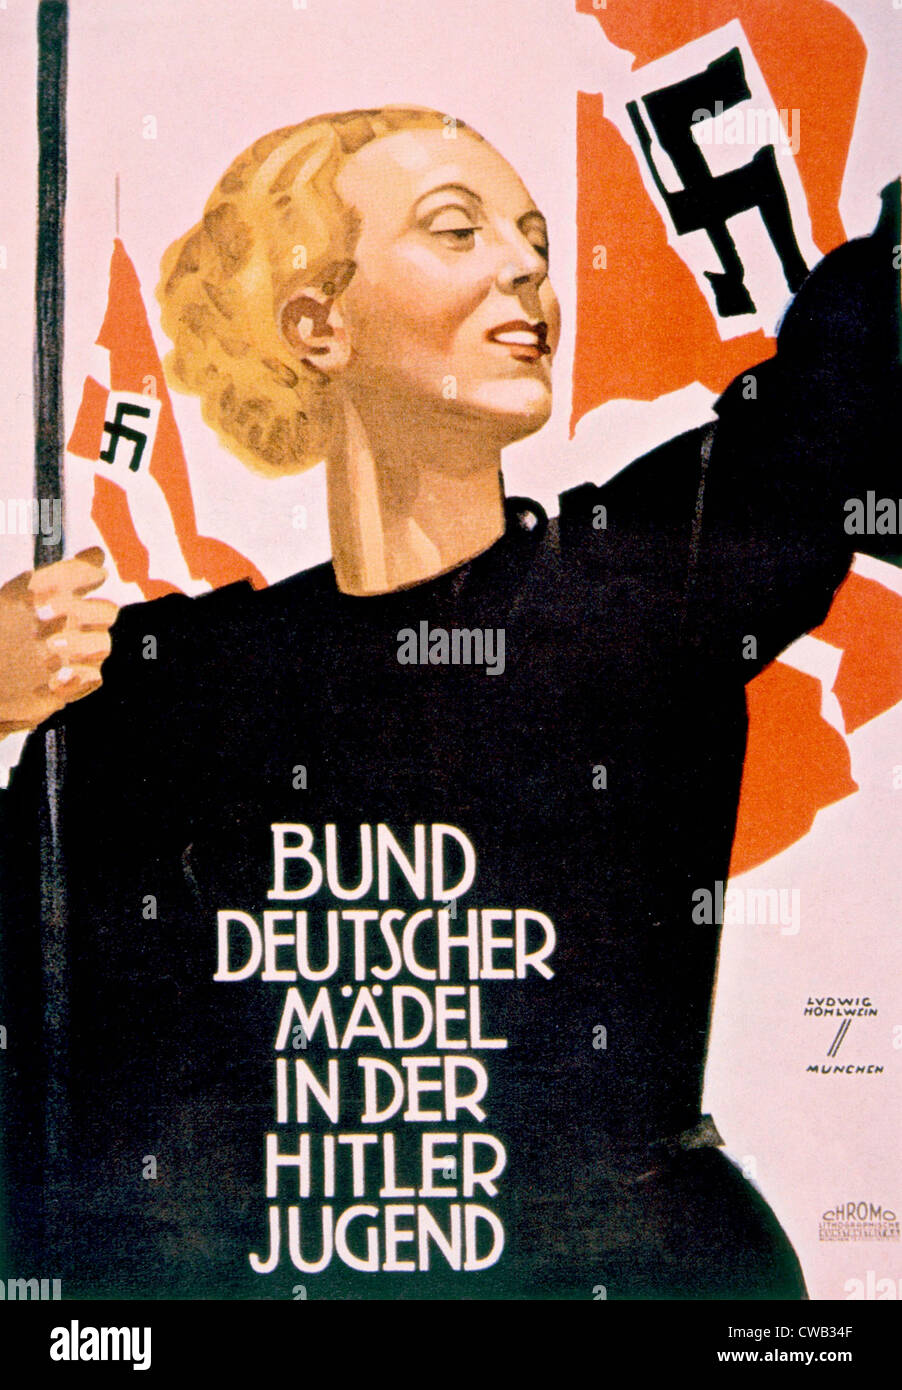 La Liga de chicas alemanas de las Juventudes Hitlerianas, Alemán poster, ca. 1936 Foto de stock